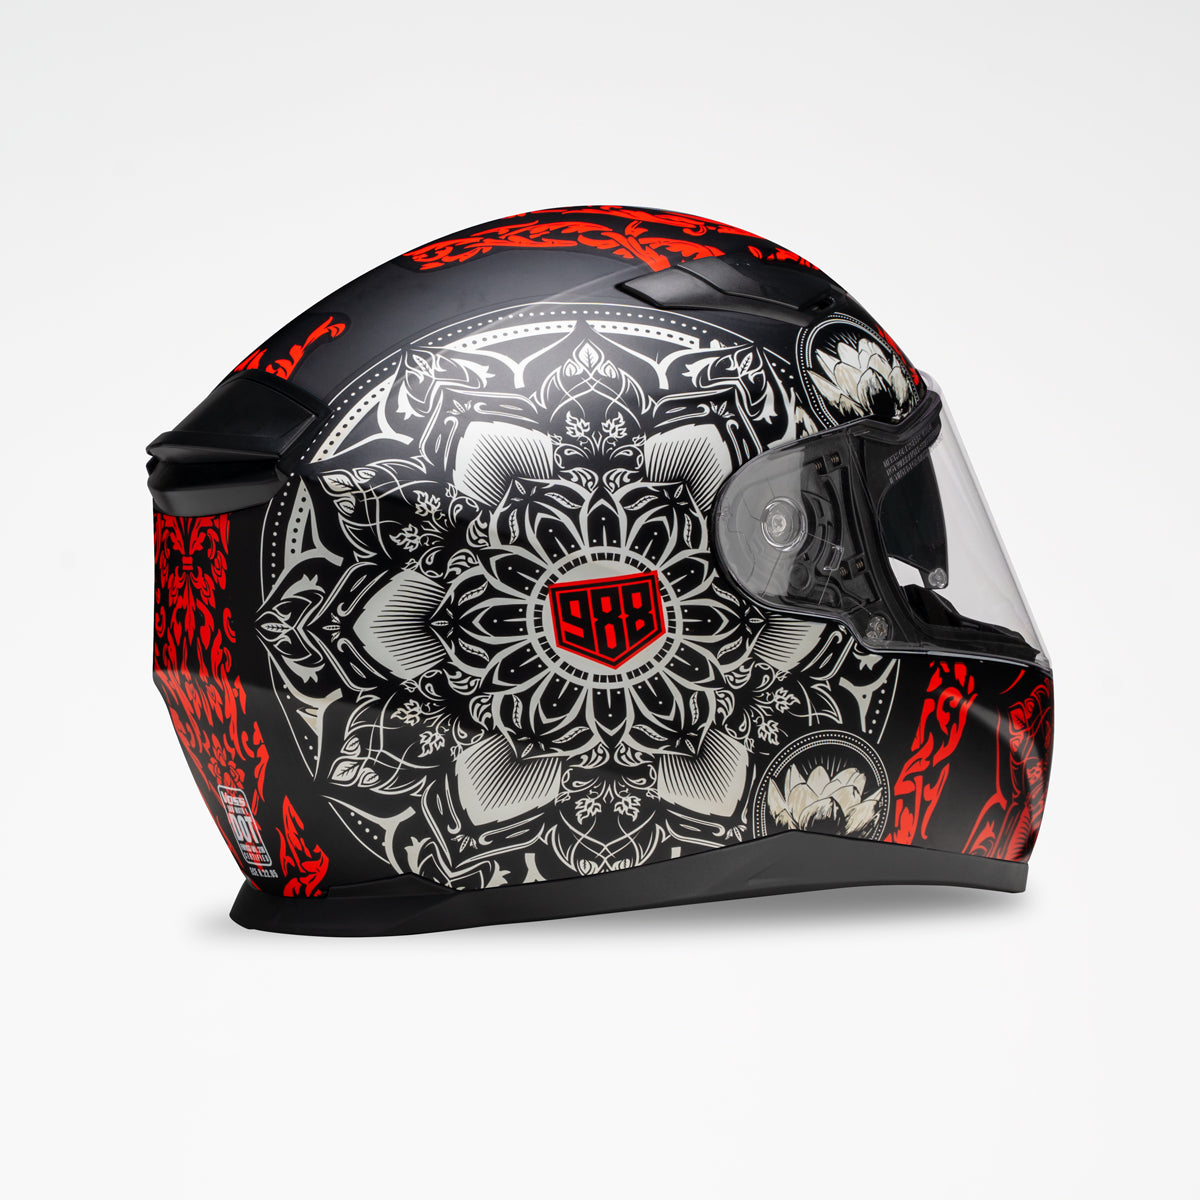 Voss 988 Moto-1 Matte Red Mandala Helmet